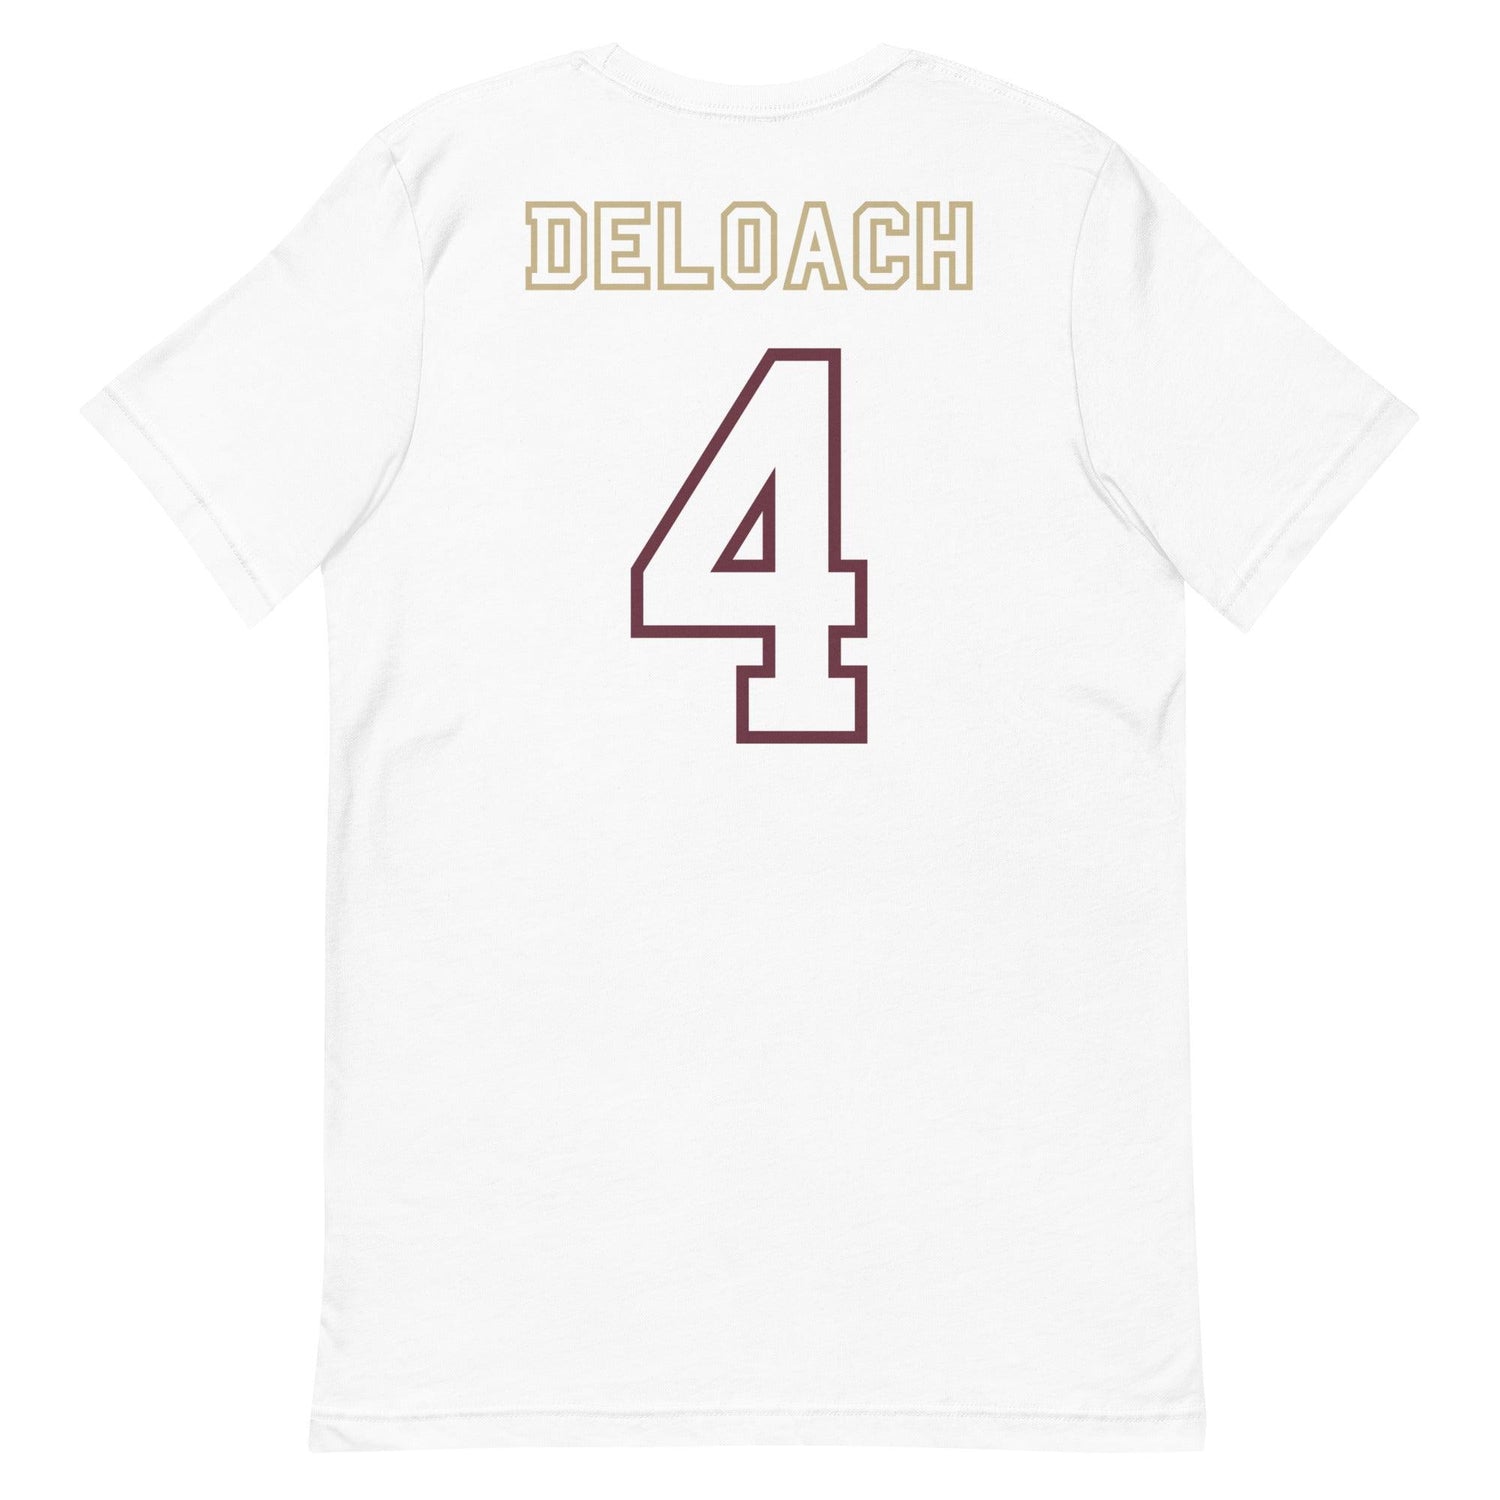 Kalen Deloach "Jersey" t-shirt - Fan Arch